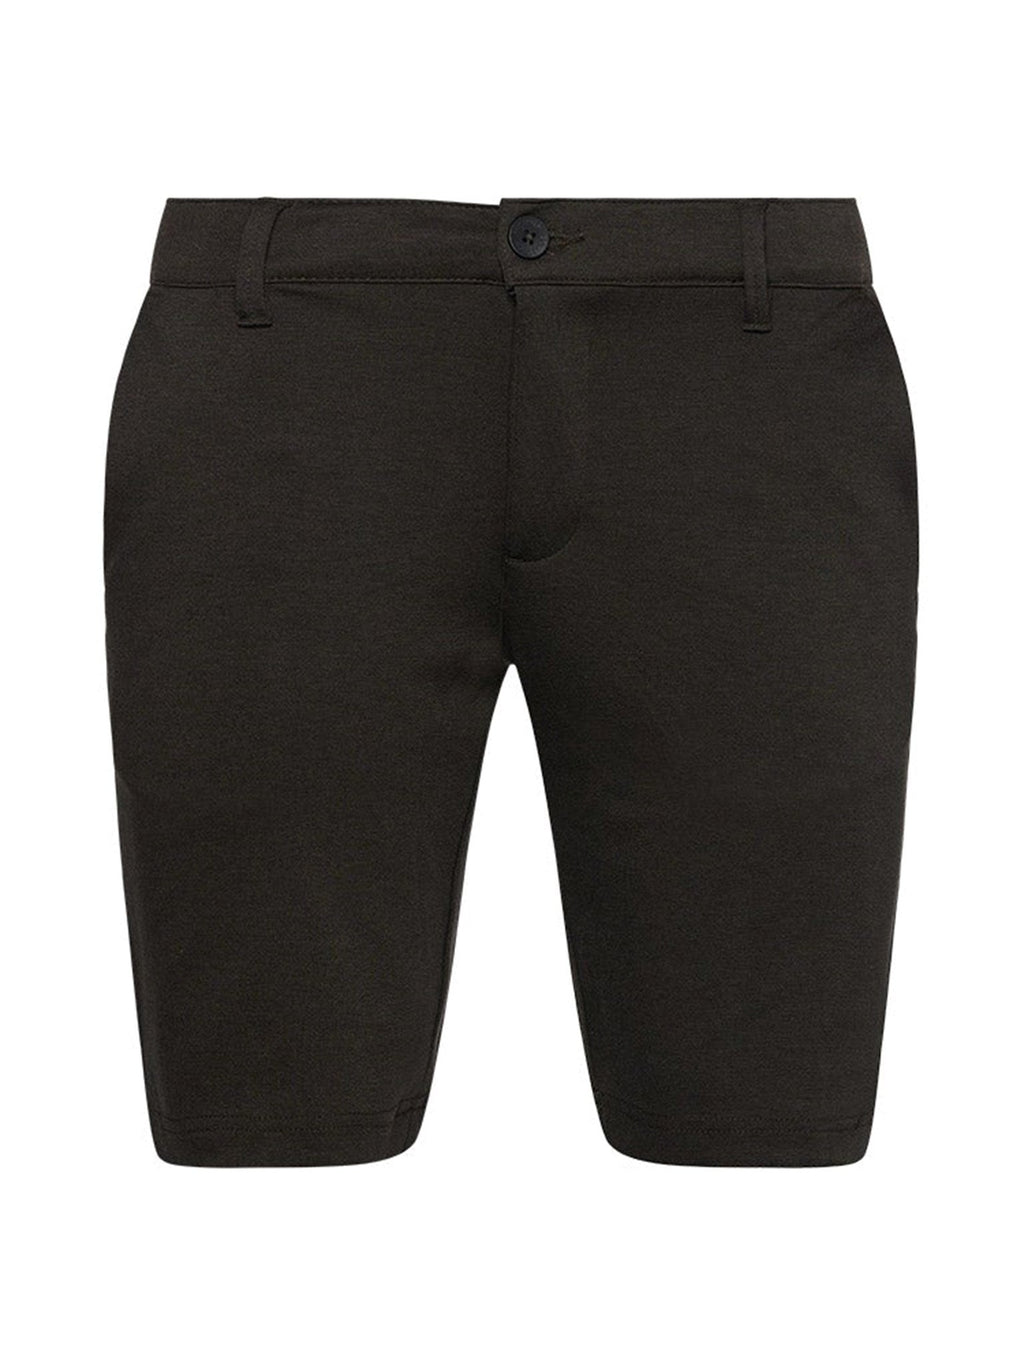 Pantalones cortos de rendimiento - gris oscuro